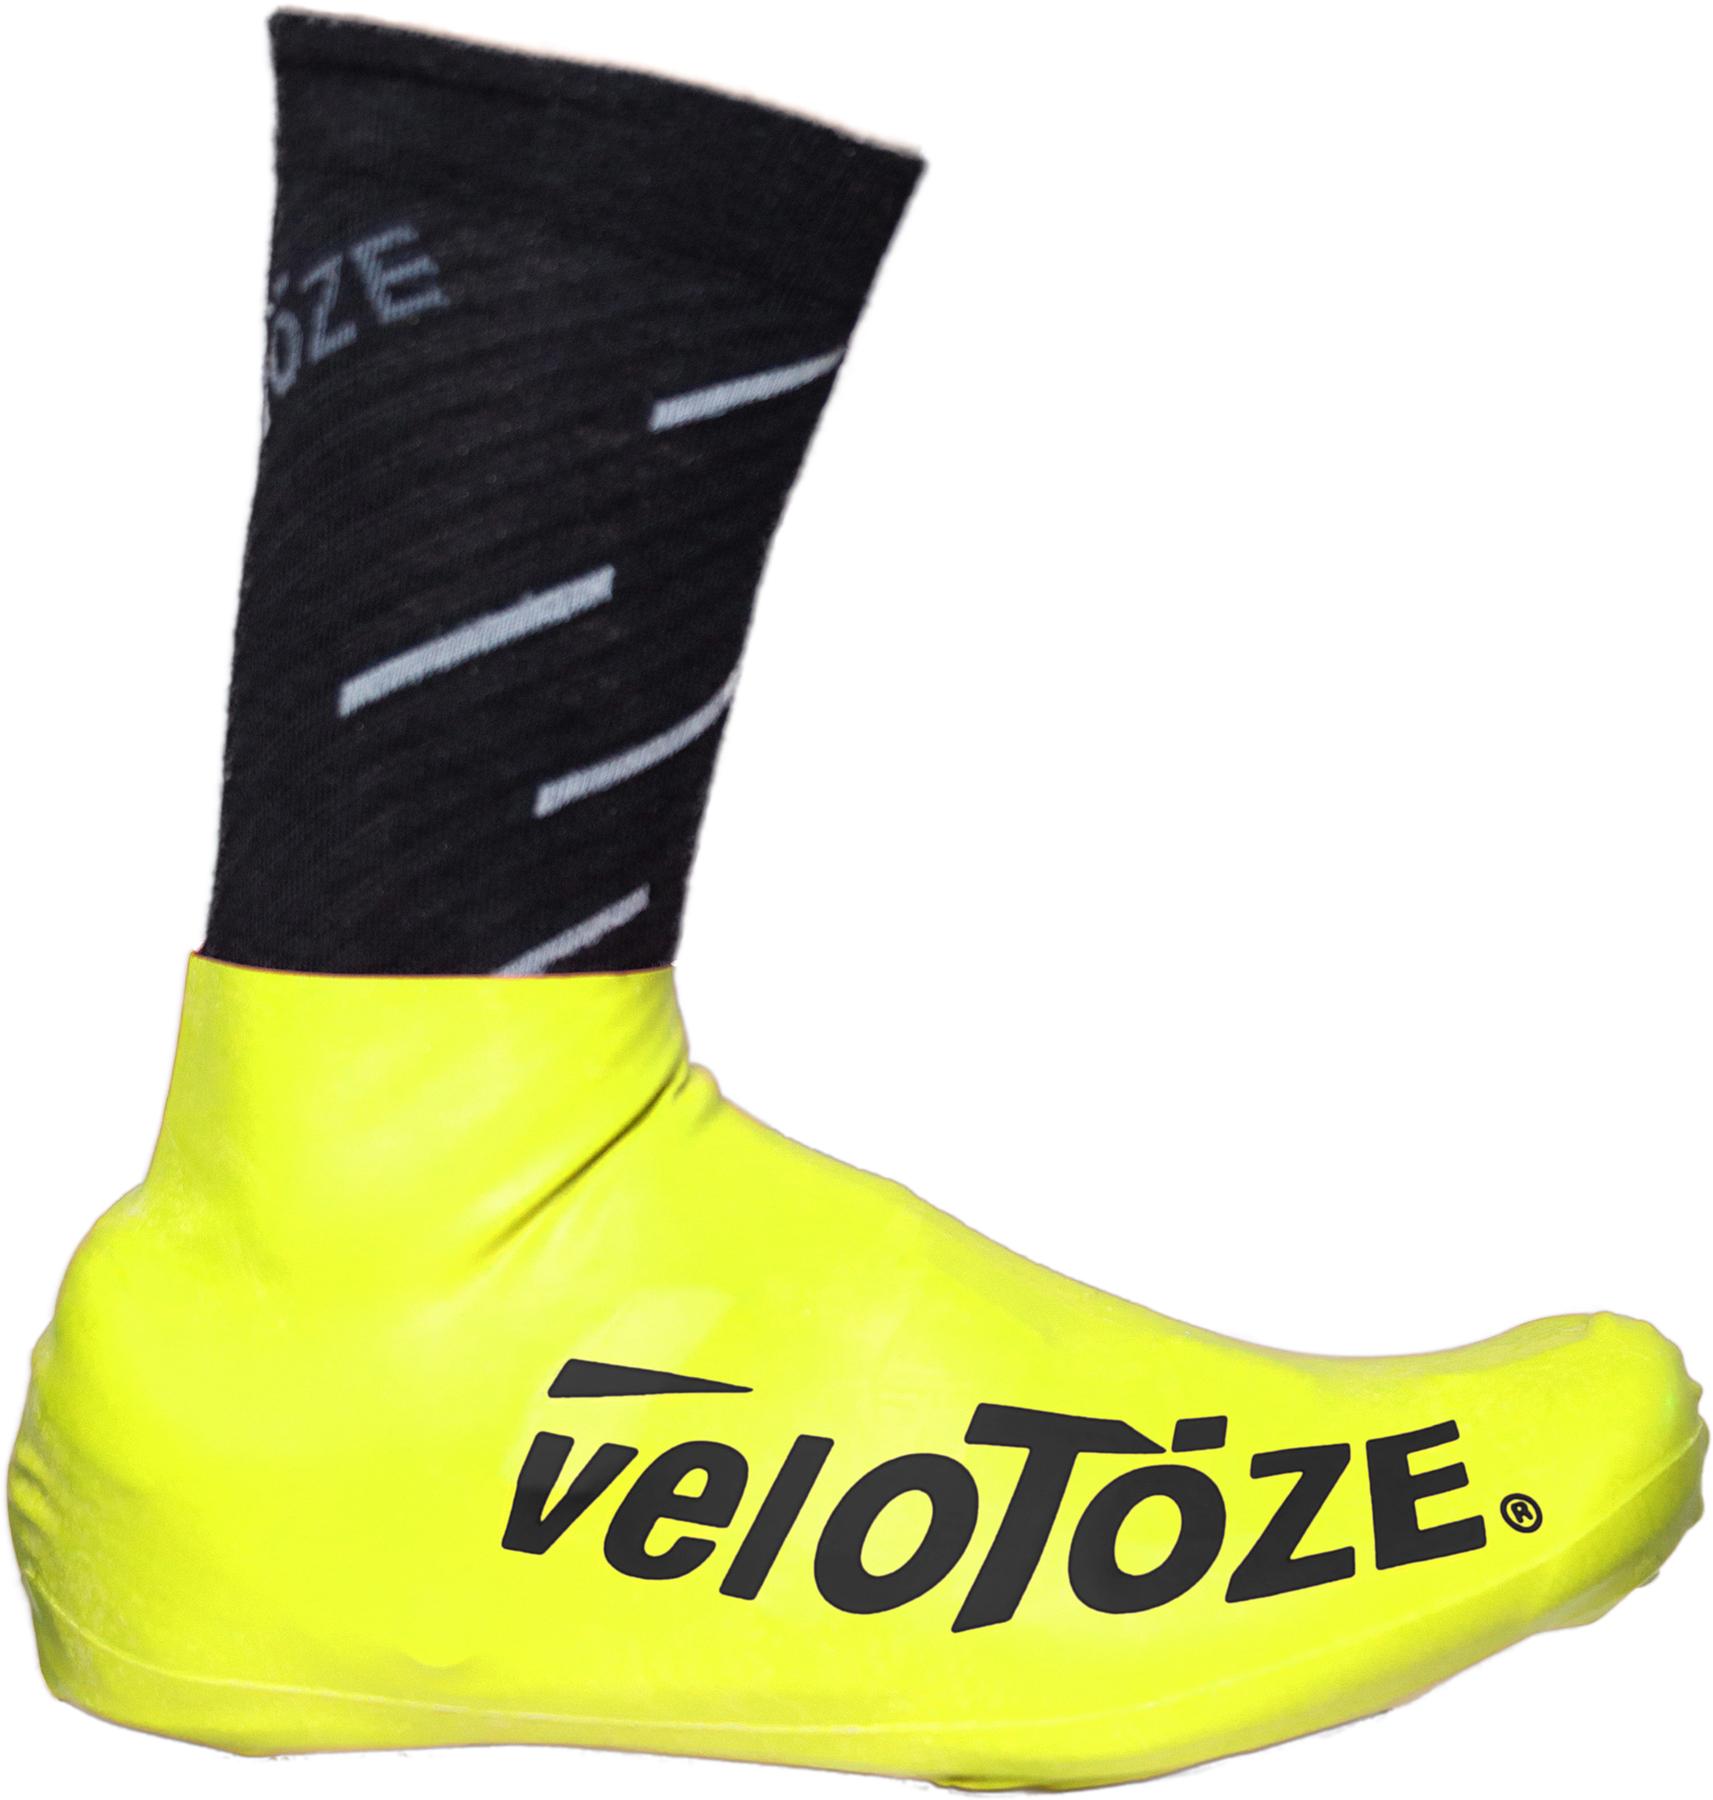 Velotoze Short Overshoes 2.0 - Yellow